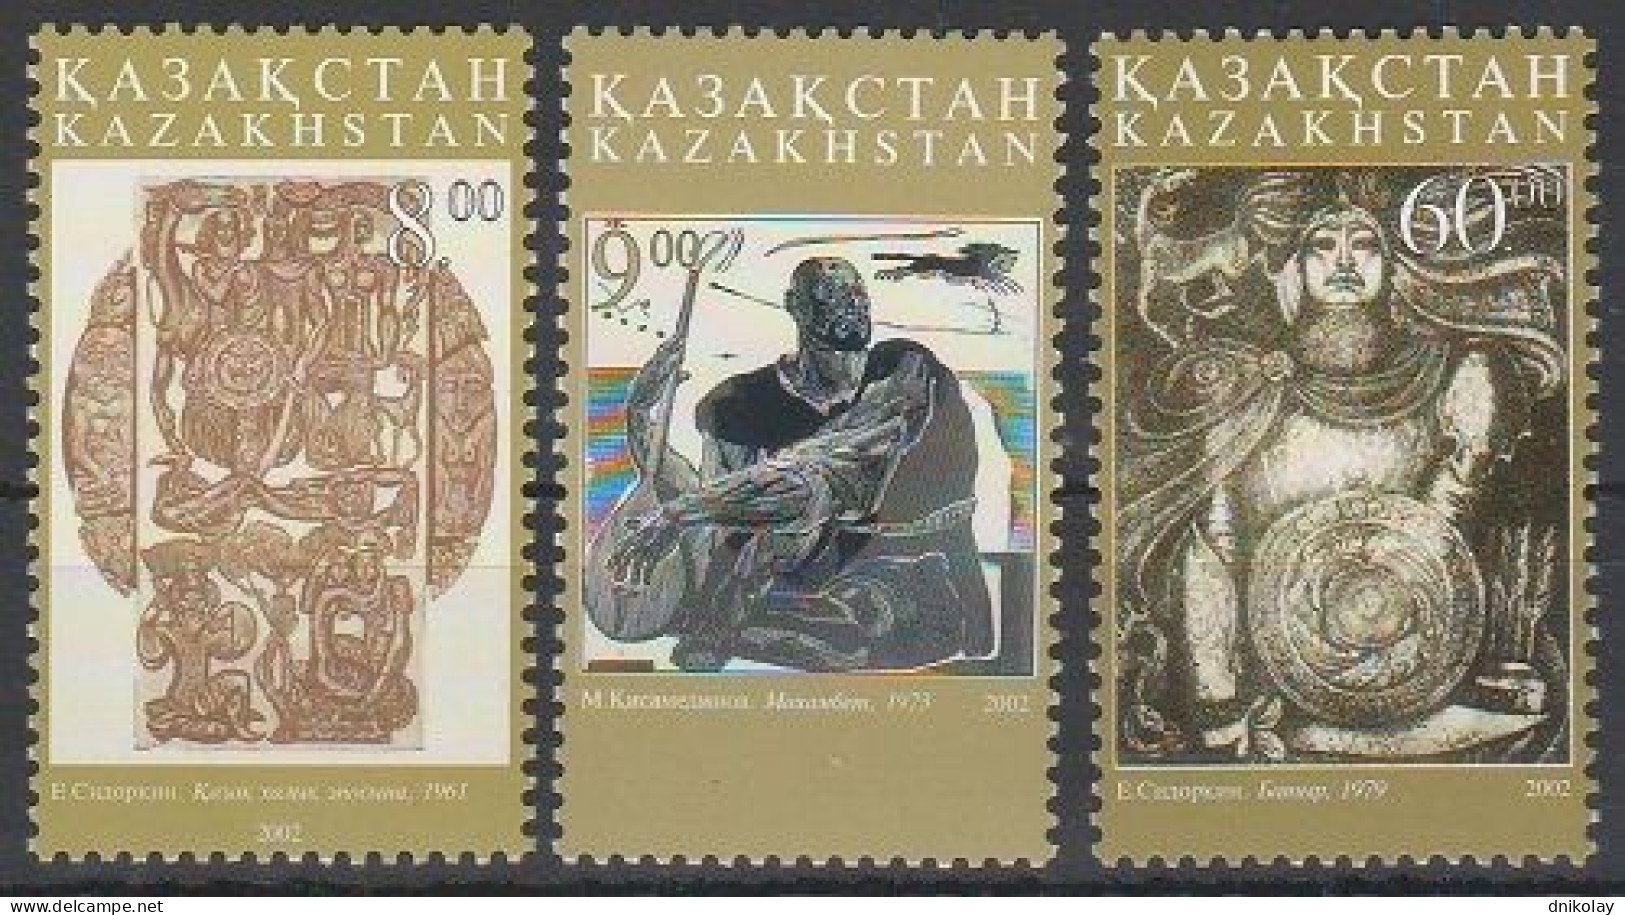 2002 393 Kazakhstan Art MNH - Kazakistan